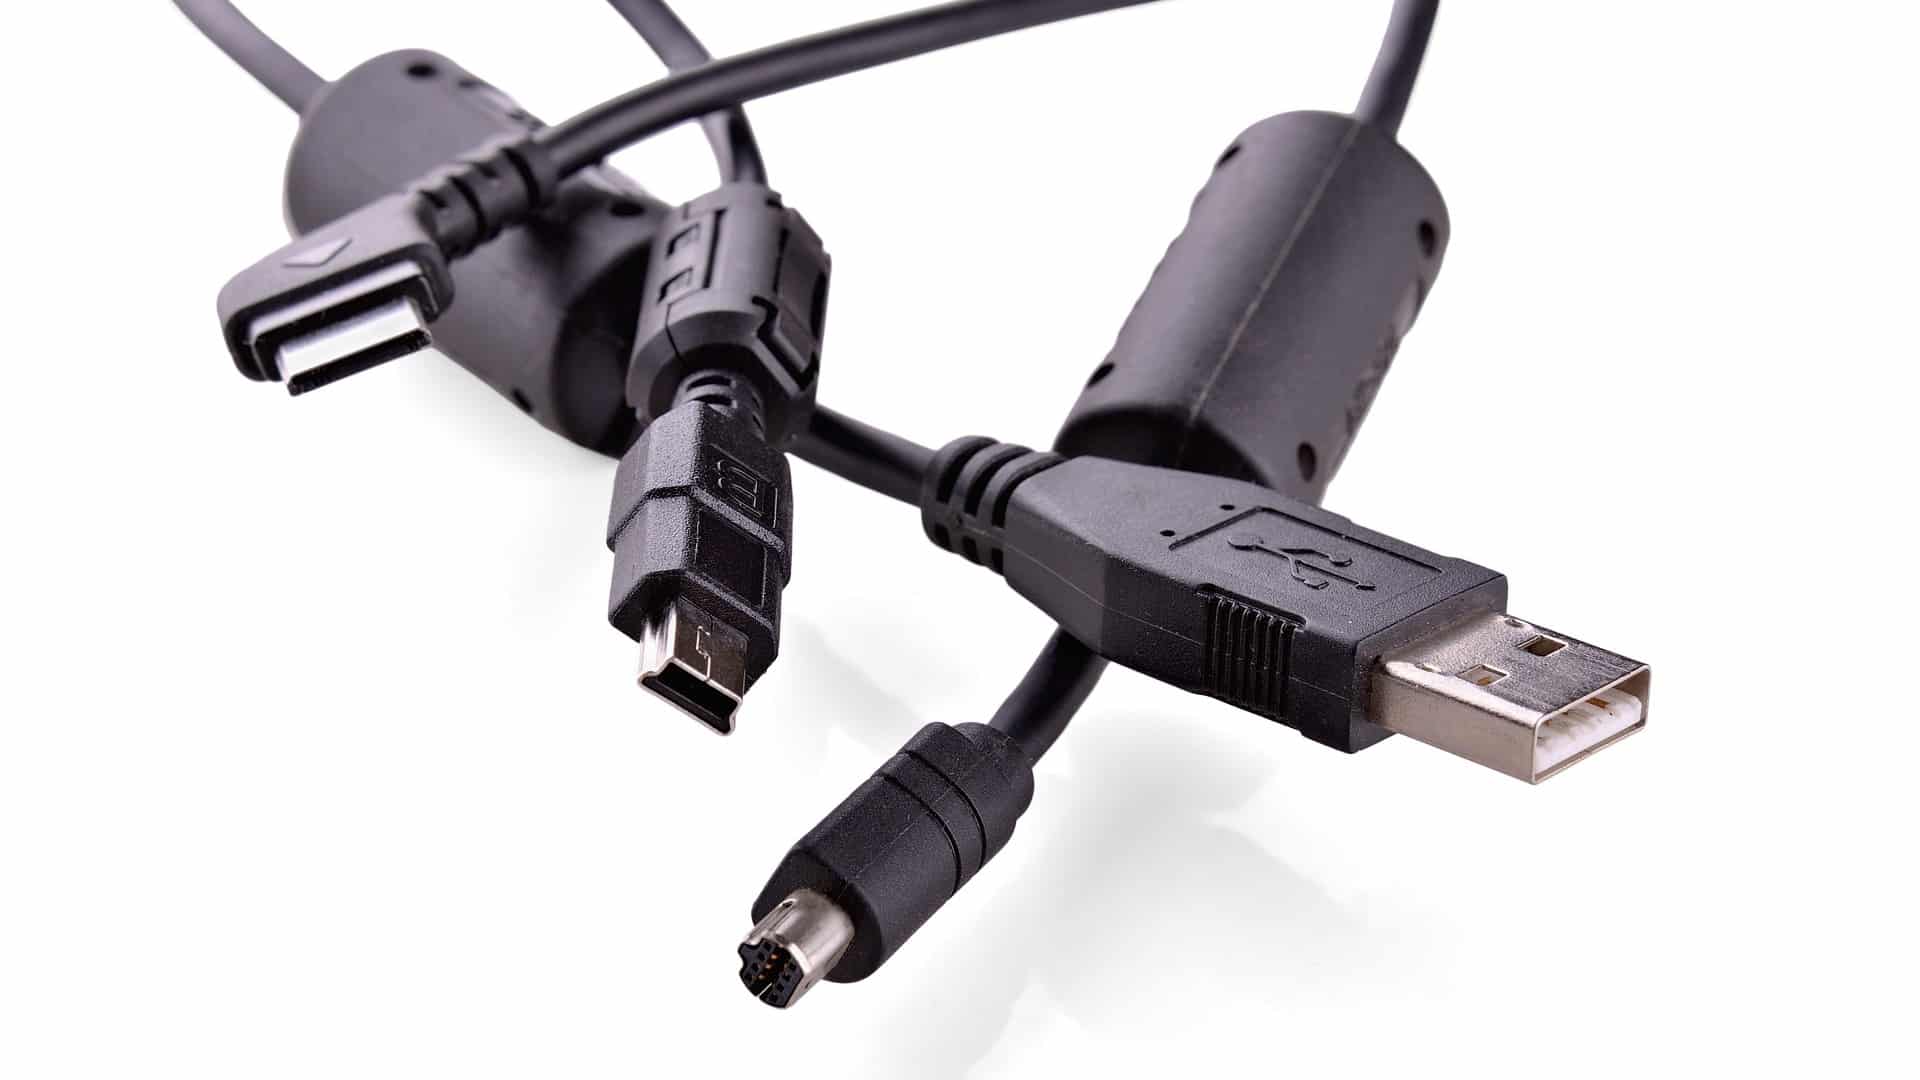  (Ne vous inquiétez pas : aucun autre connecteur USB ne viendra s'ajouter aux nombreux connecteurs différents déjà existants avec l'USB 4 version 2.0)